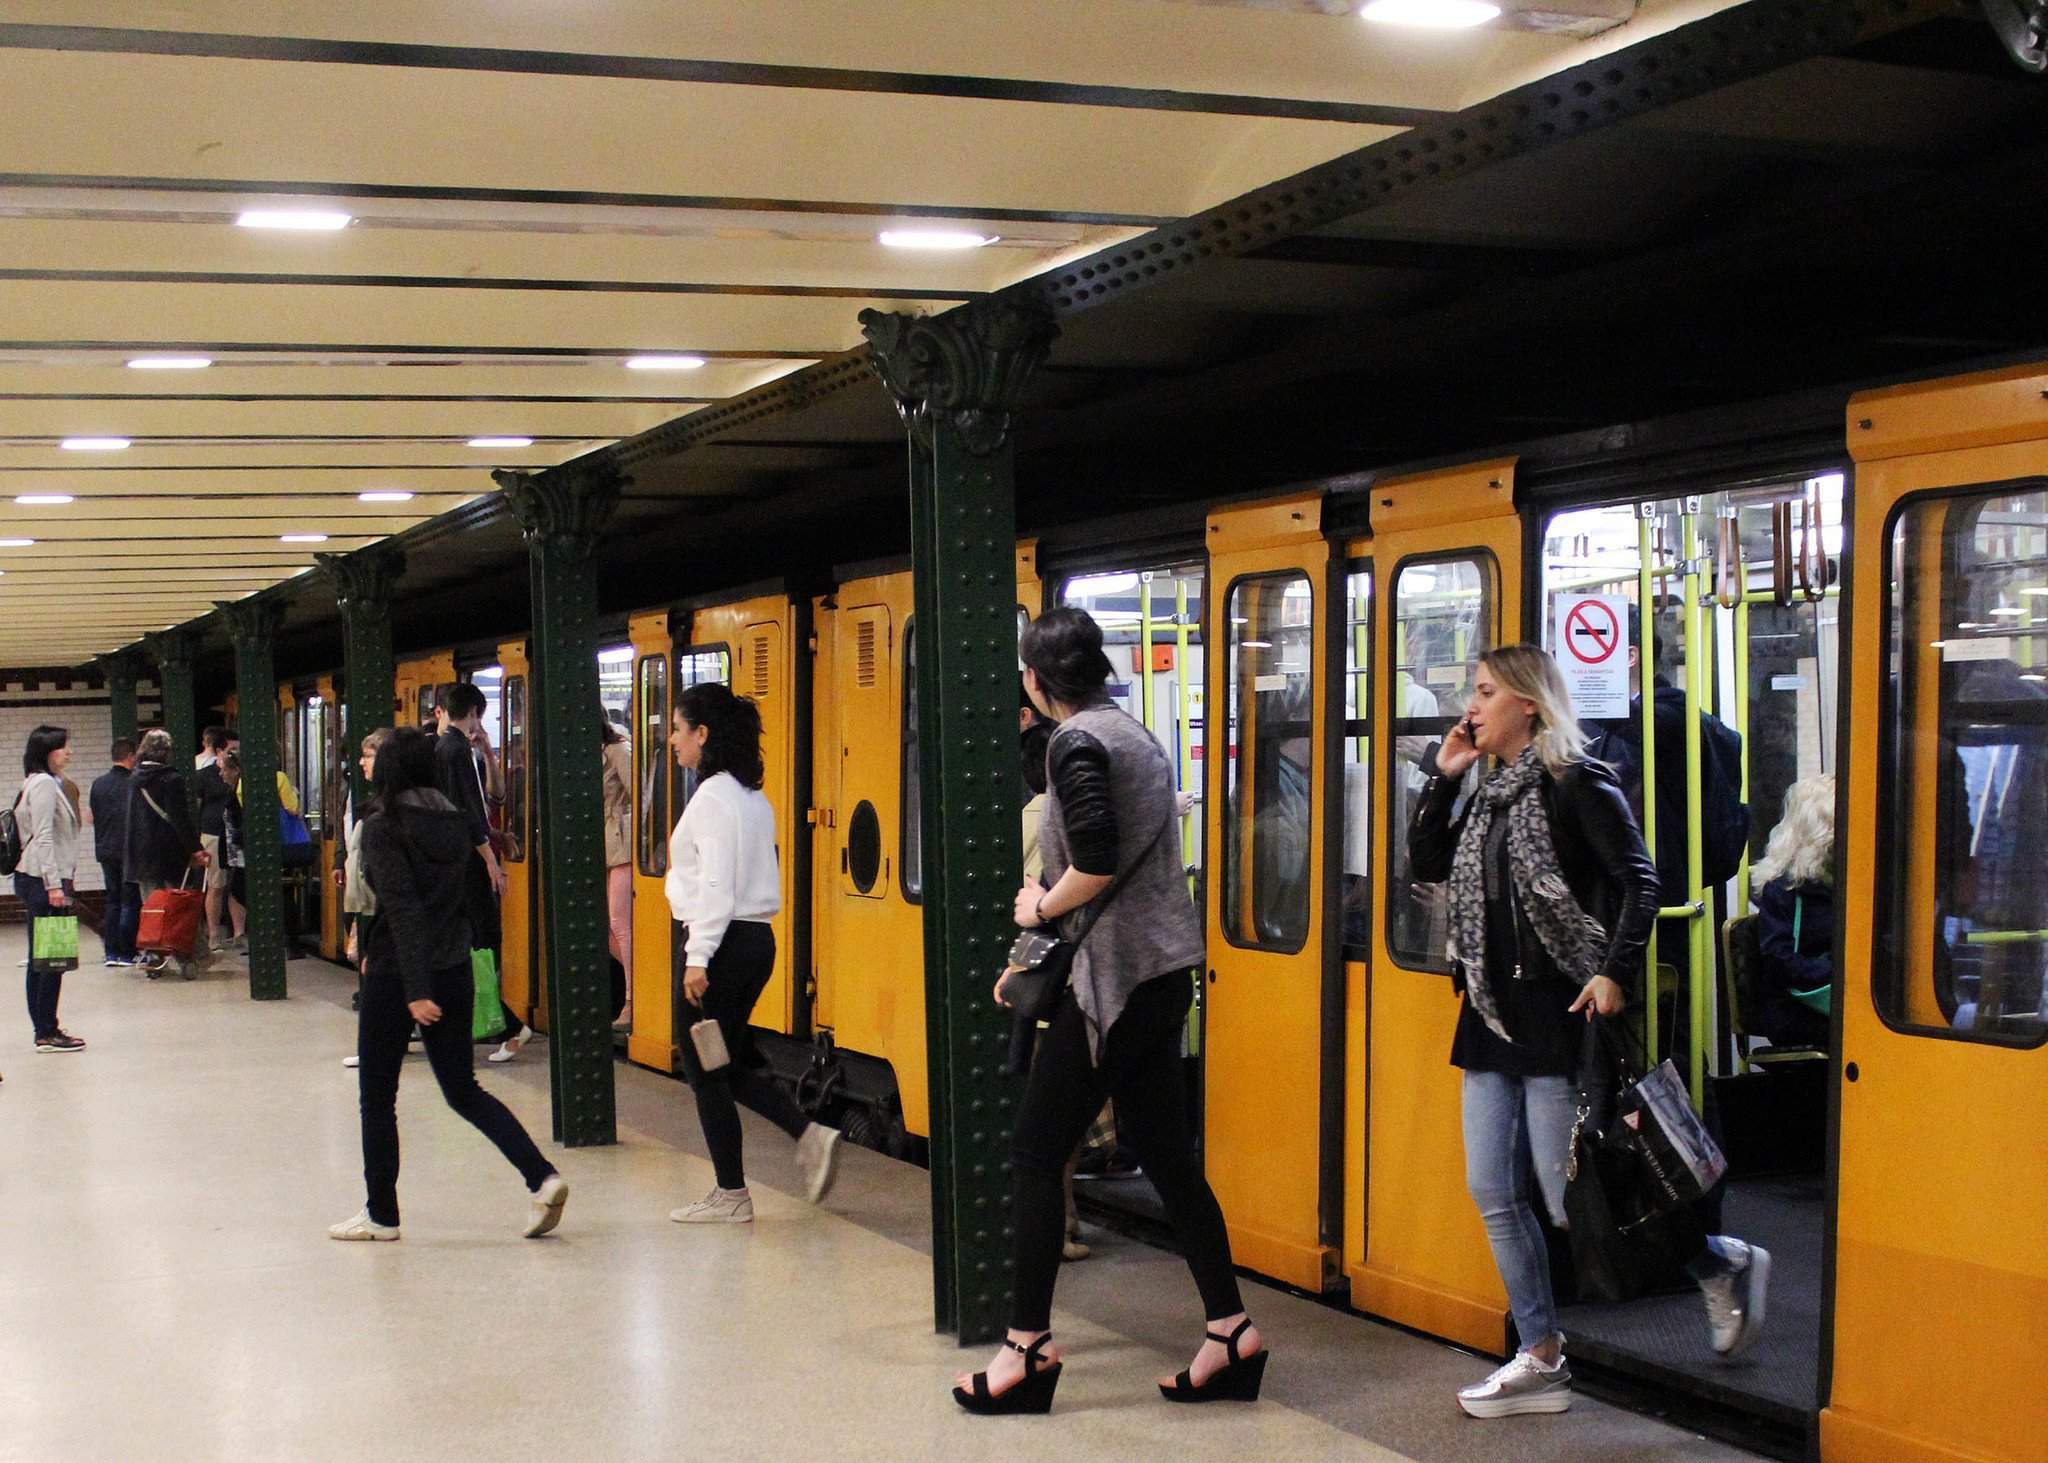 budapest-metro-undergound railway-bkk-bkv 2